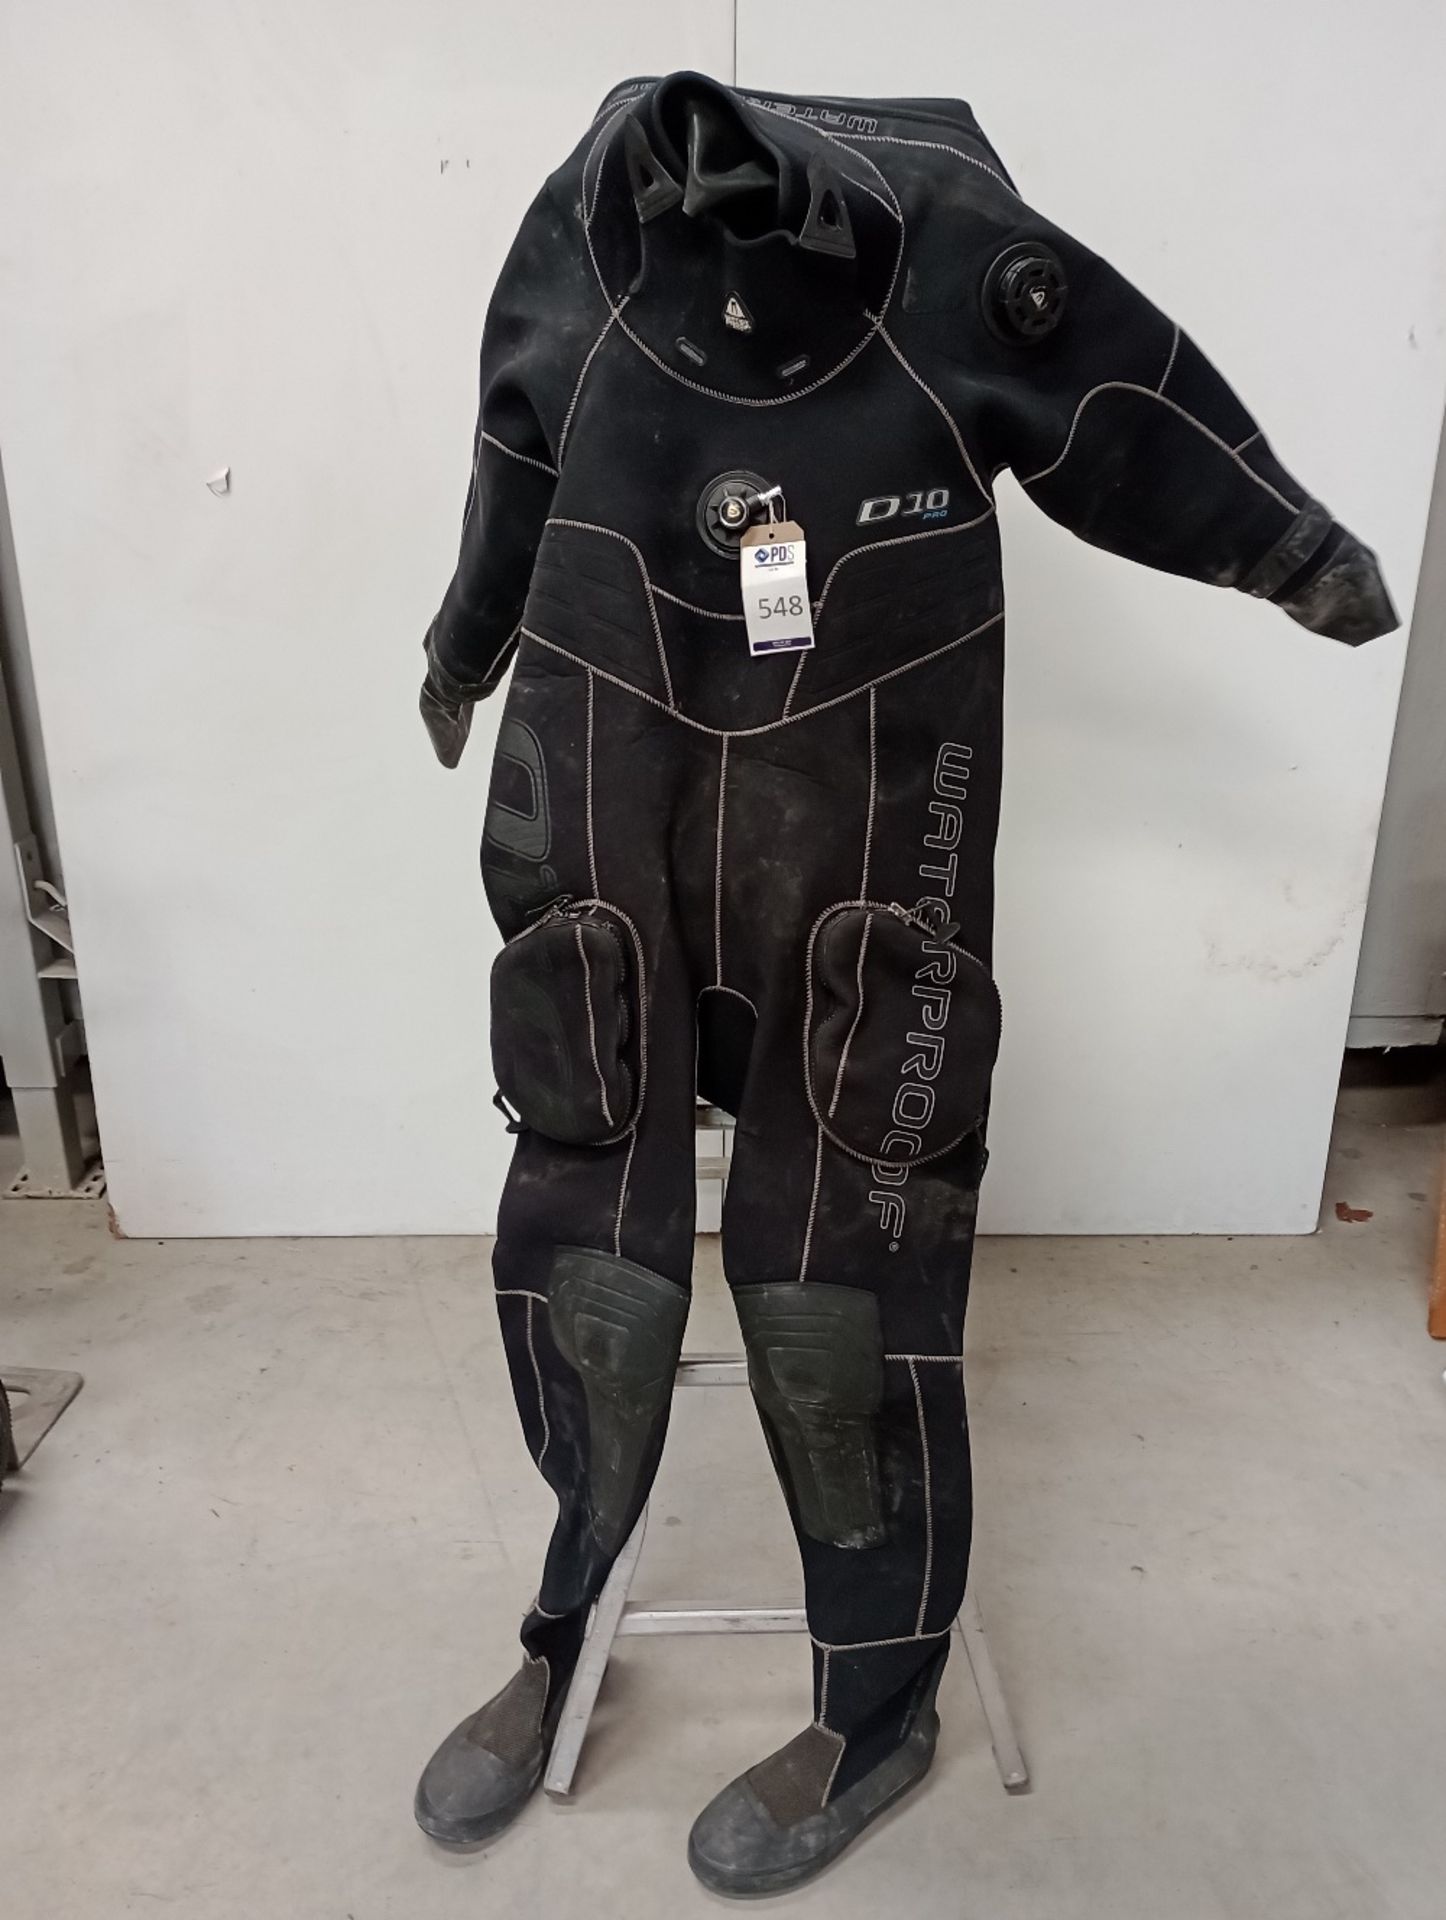 Waterproof D10 Pro Drysuit, Ref No.0001-4368,Size Men's L, Serial No.0112116805044 (Location: